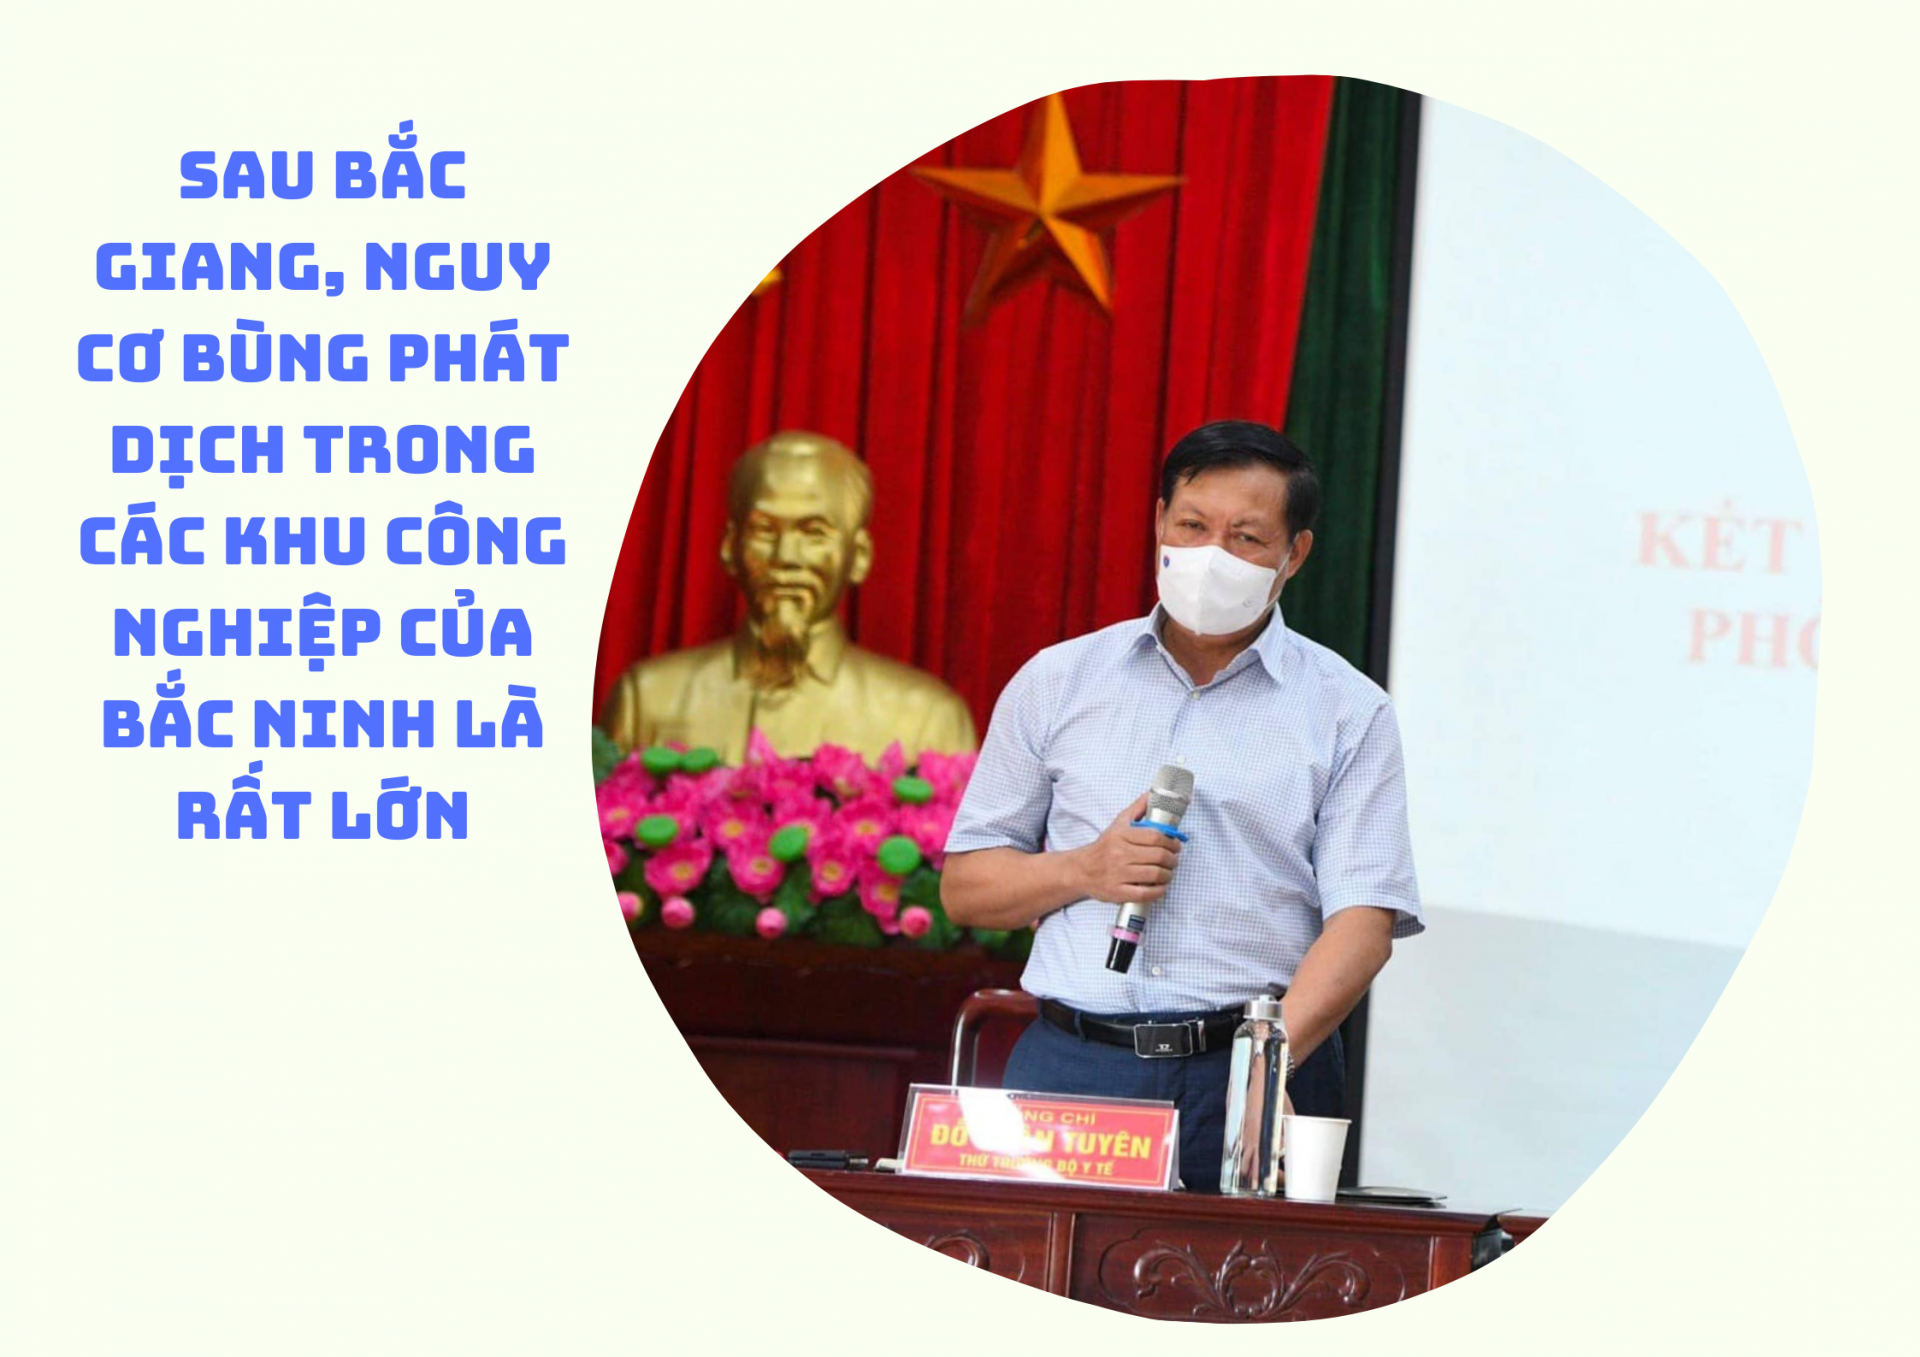 Sau Bắc Giang, nguy cơ bùng phát dịch trong các khu công nghiệp của Bắc Ninh là rất lớn